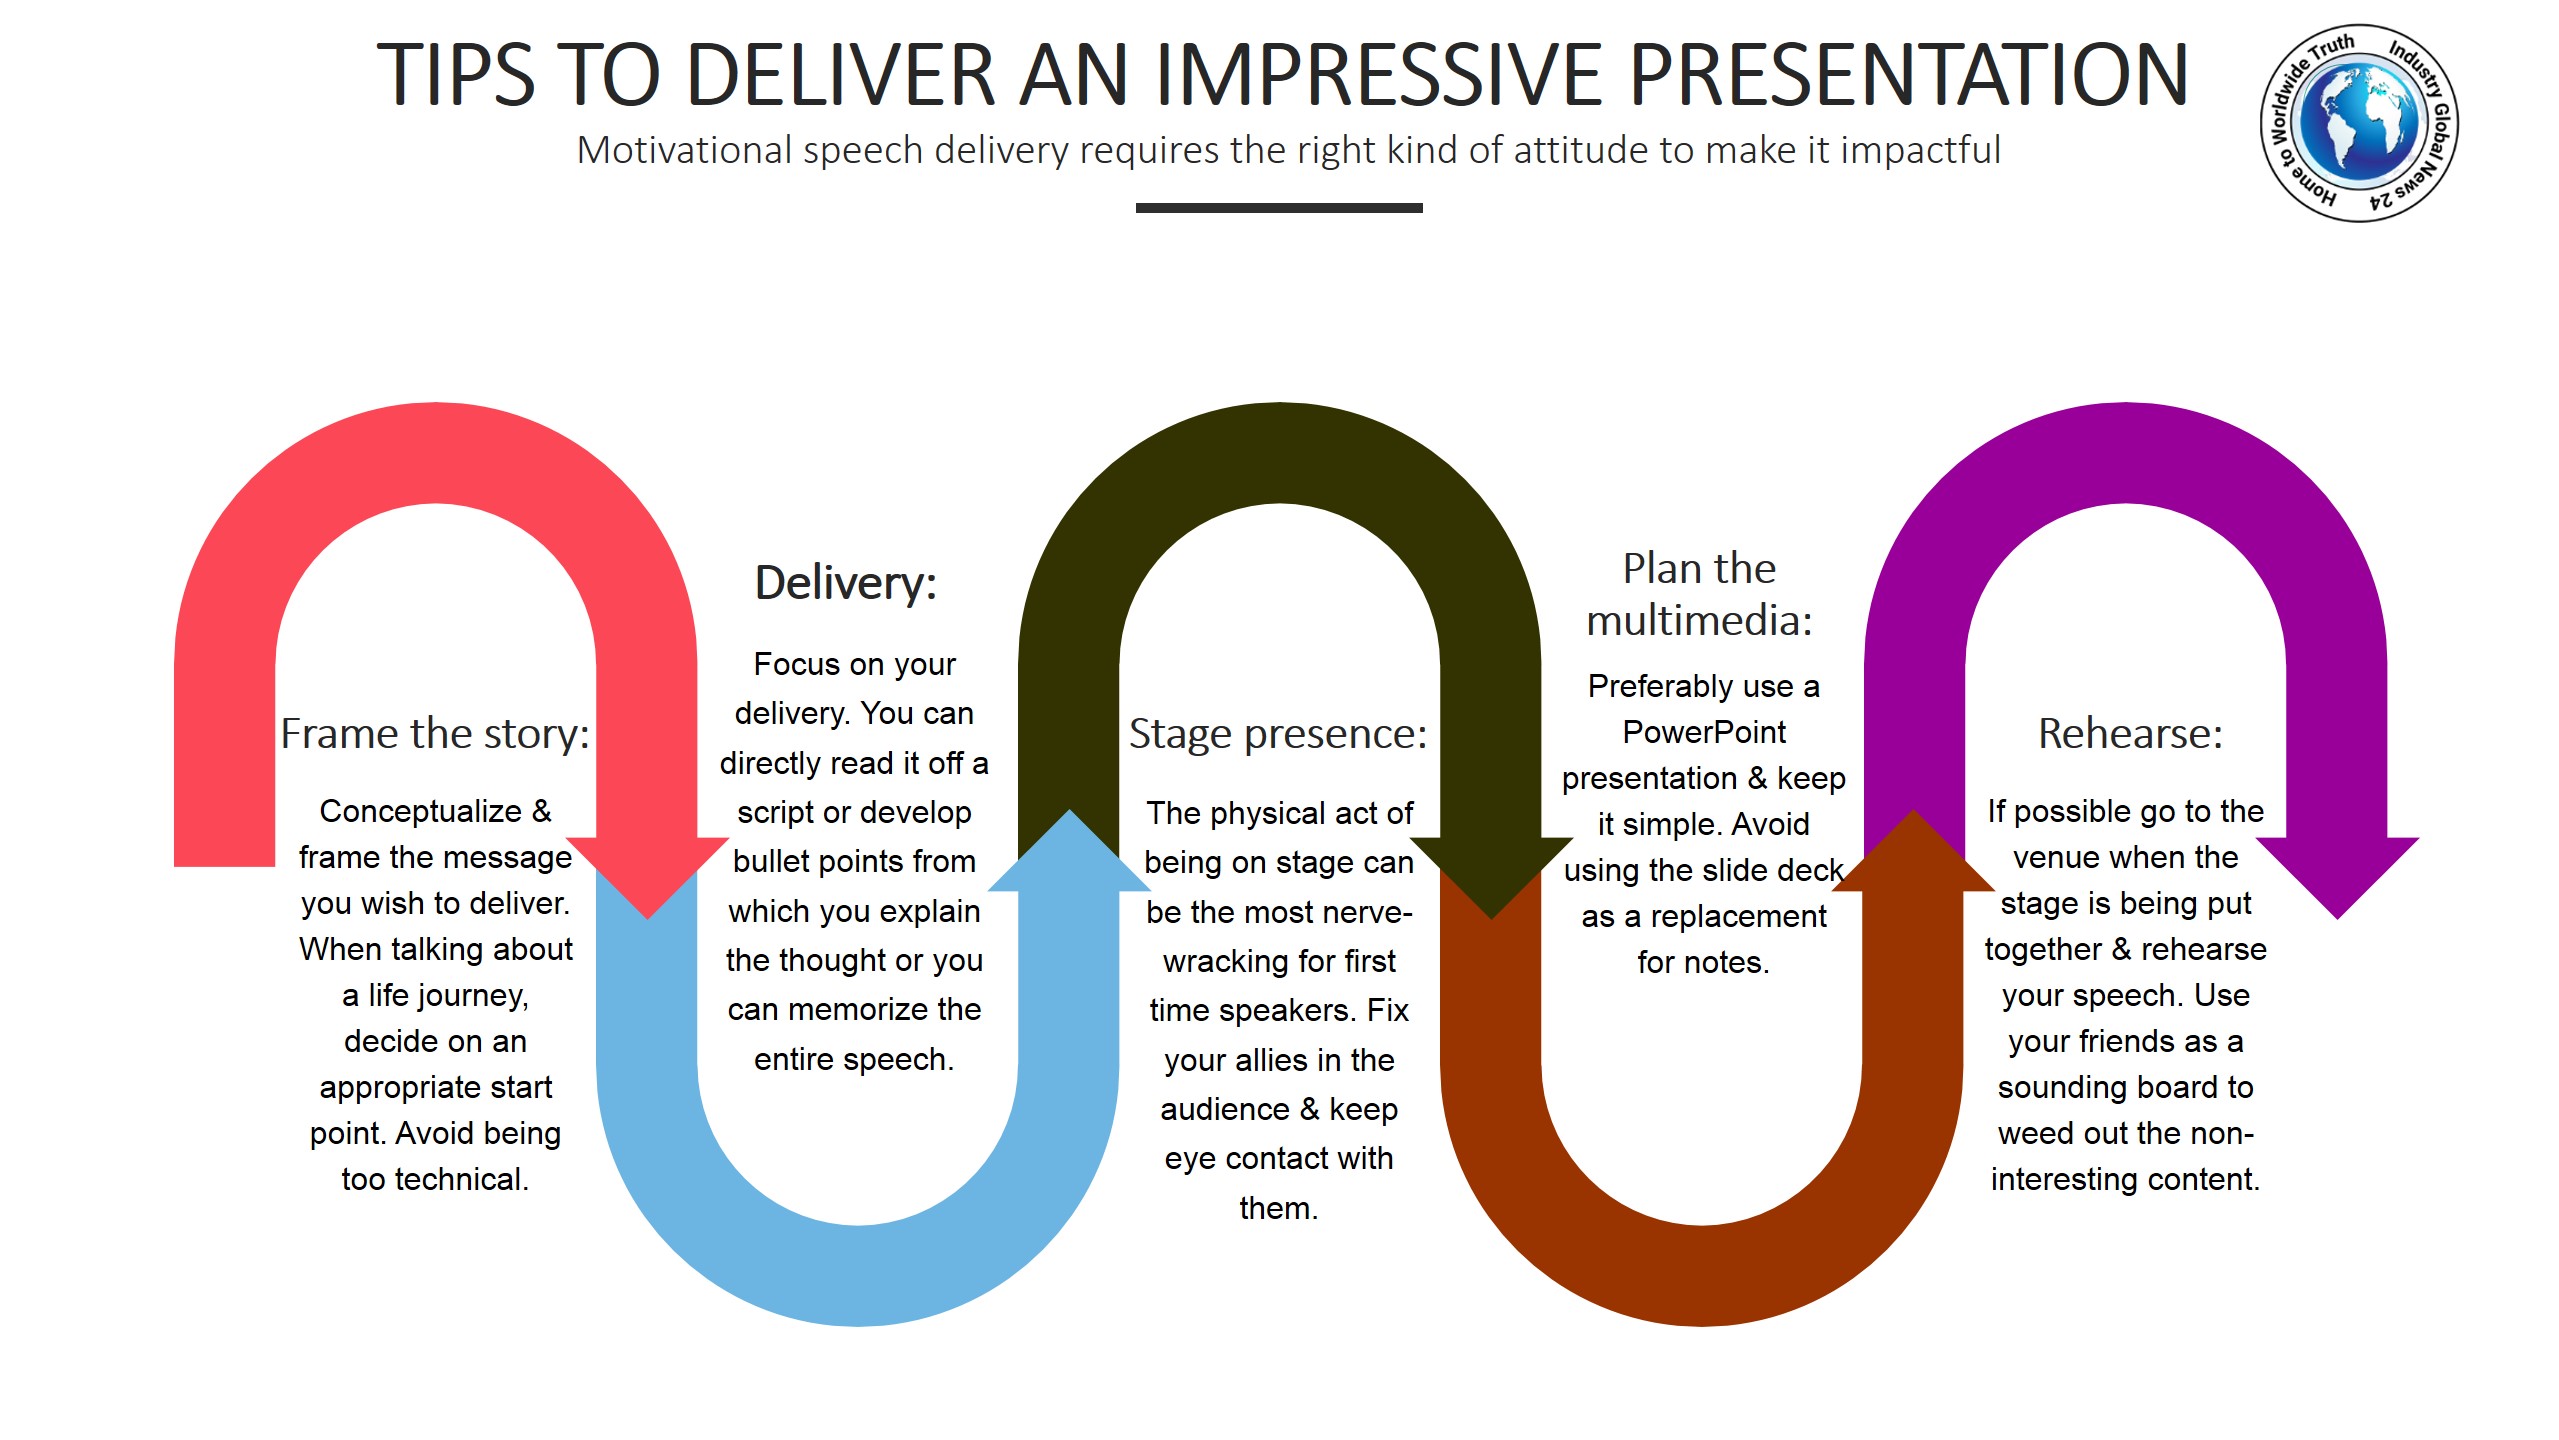 Tips to deliver an impressive presentation